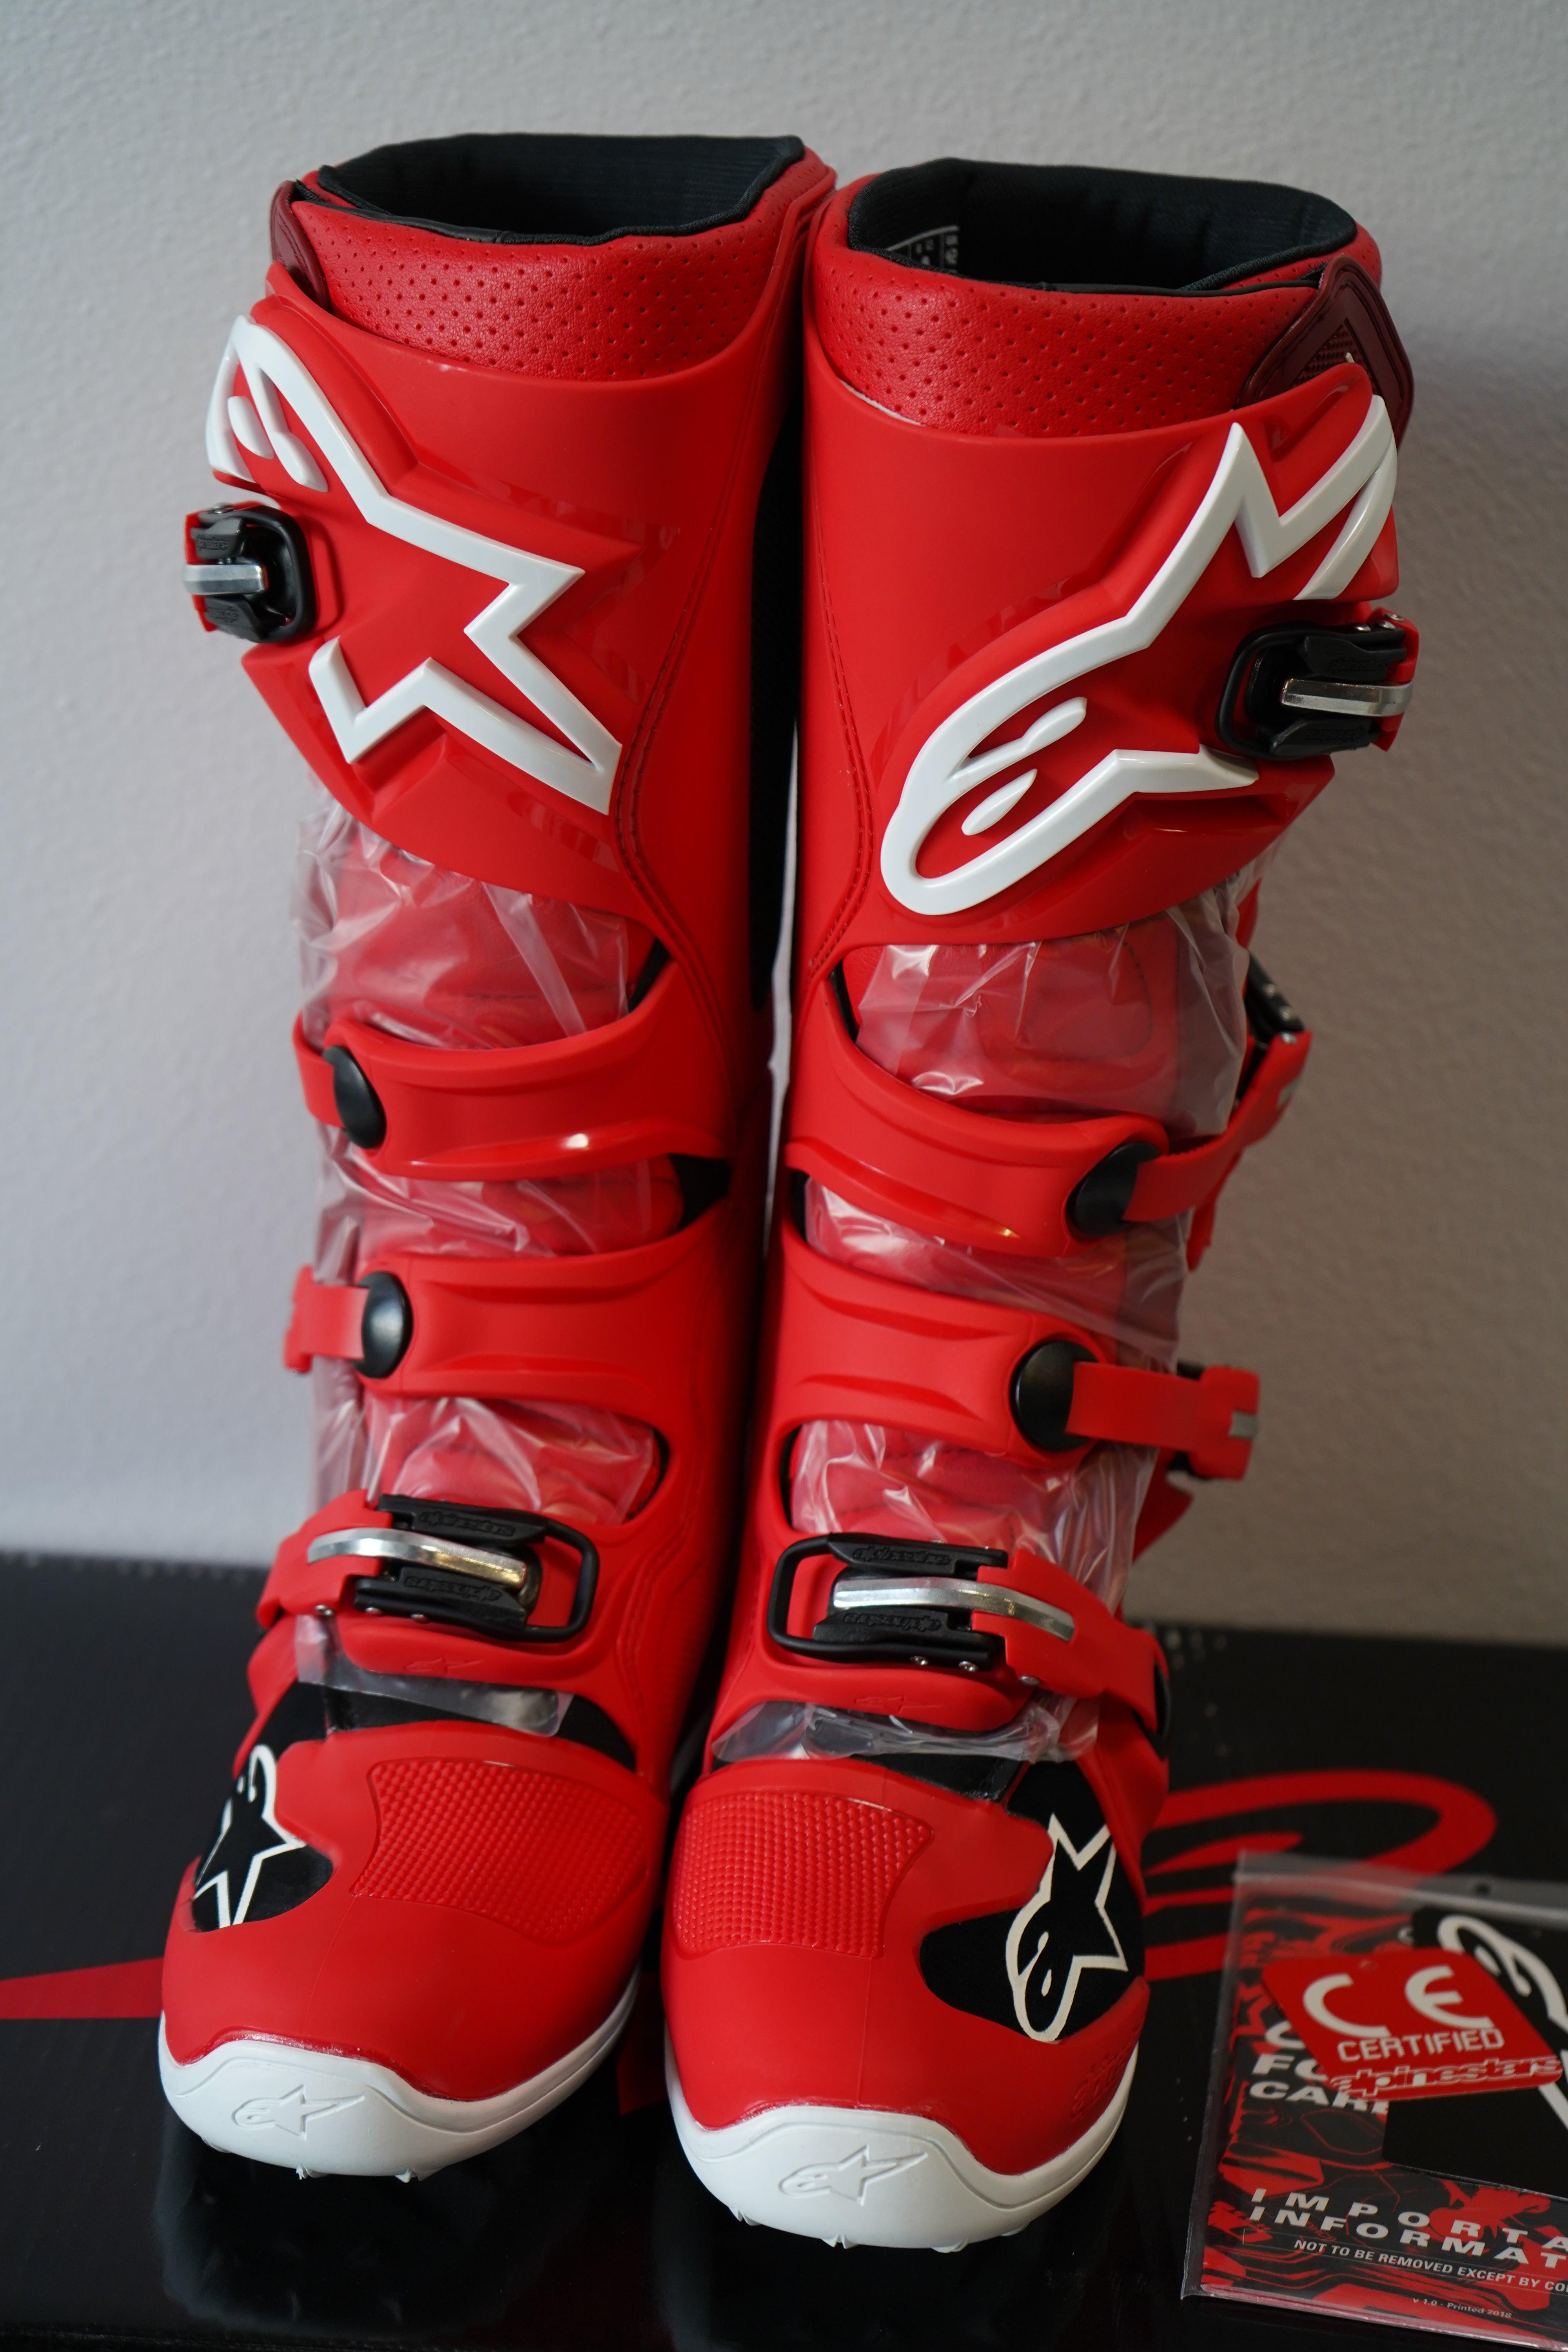 Alpinestars Tech 7 Boots - Red